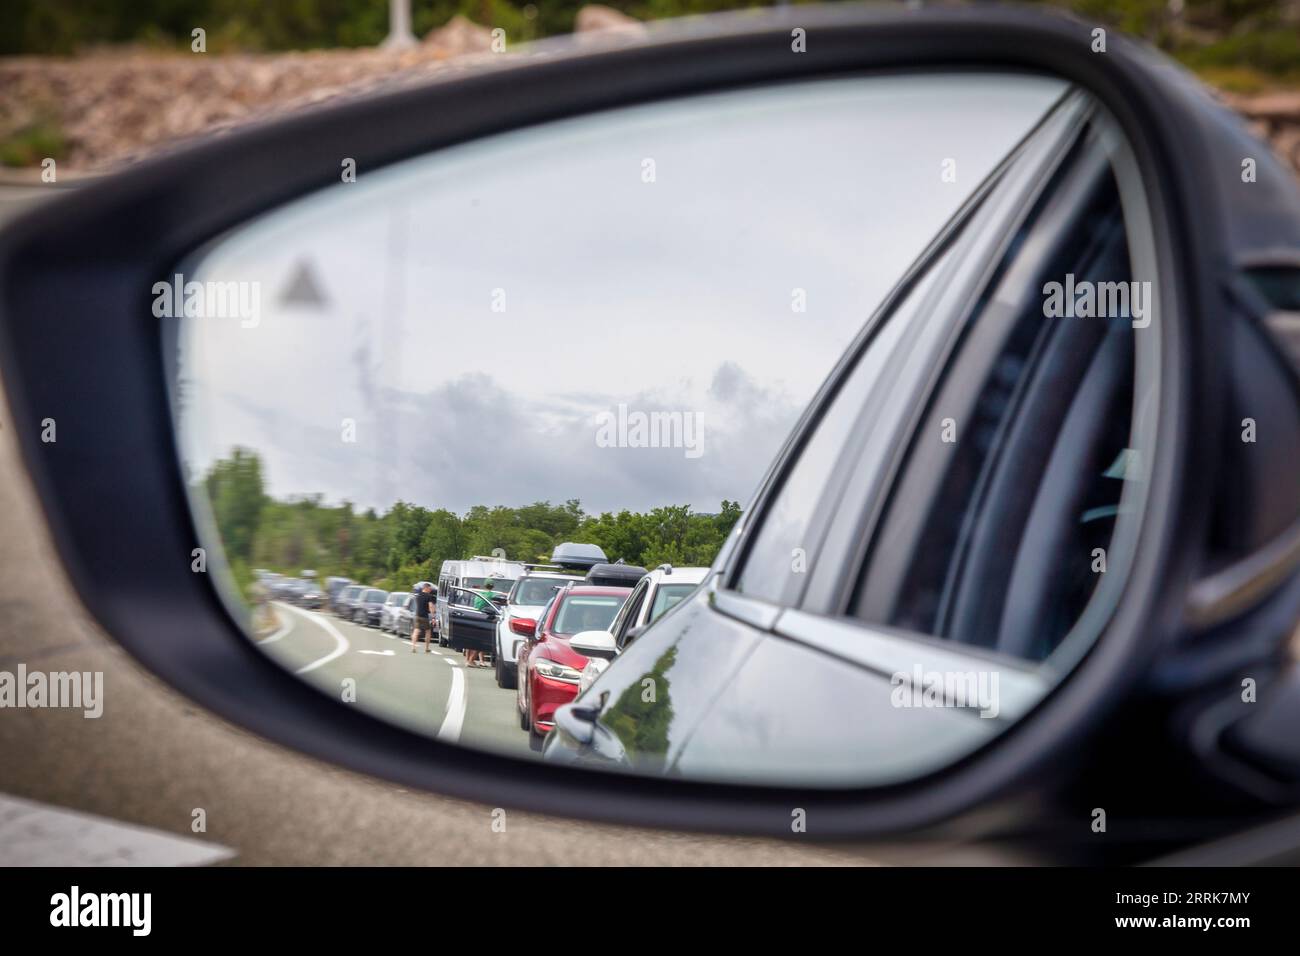 Croatie, comté de Lika-Senj, municipalité de Senj, port de Stinica, voitures en attente du ferry vu du rétroviseur extérieur de la voiture Banque D'Images